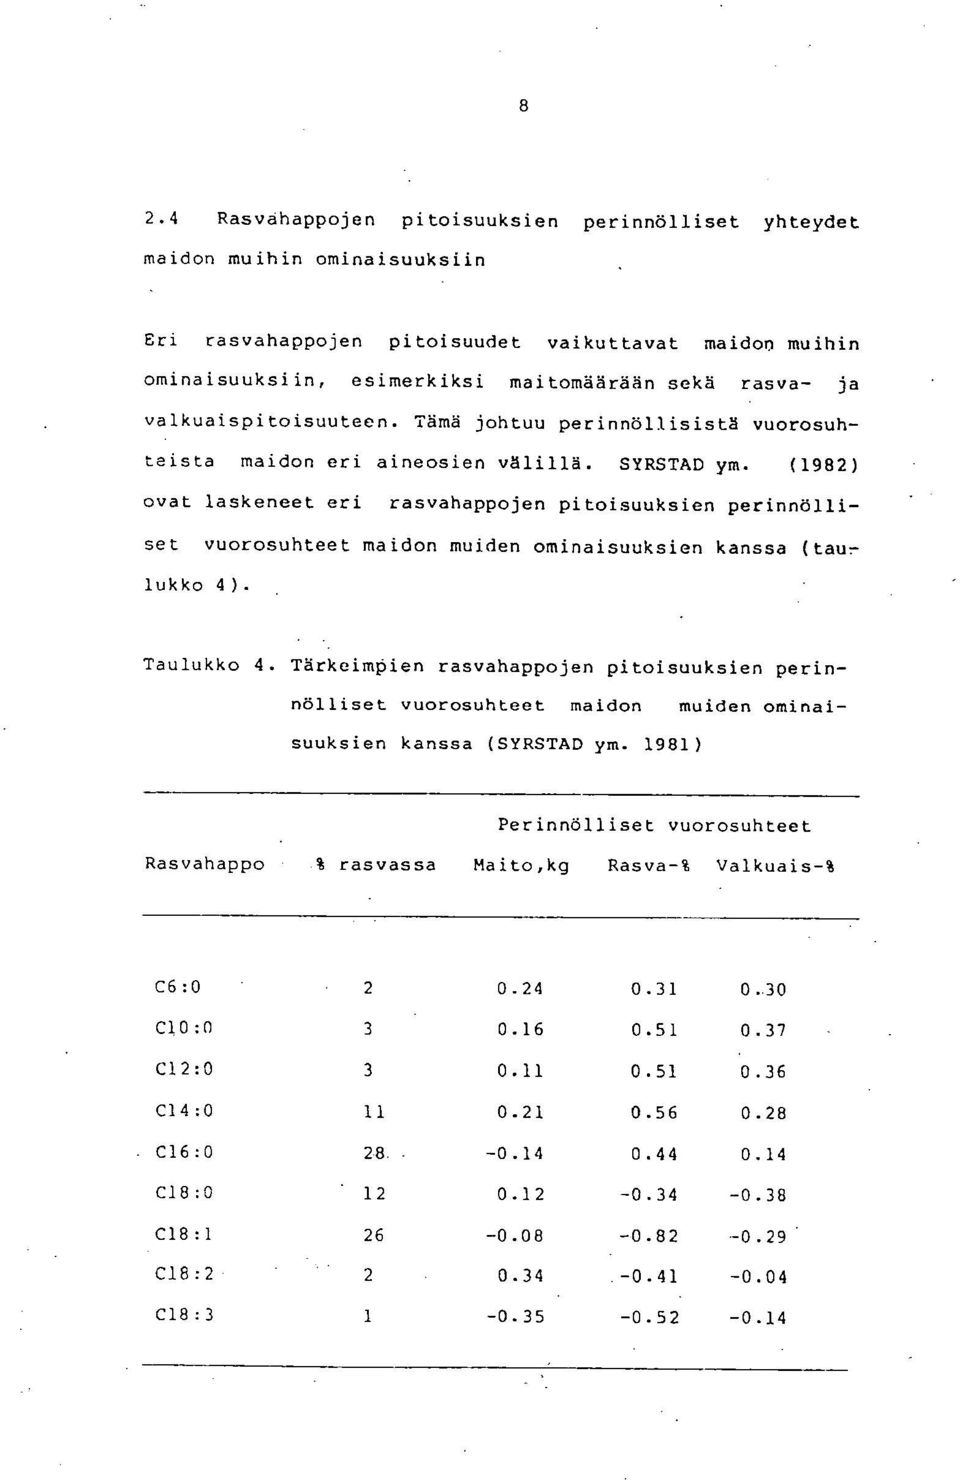 (1982) ovat laskeneet eri rasvahappojen pitoisuuksien perinnölliset vuorosuhteet maidon muiden ominaisuuksien kanssa (tali:- lukko 4). Taulukko 4.